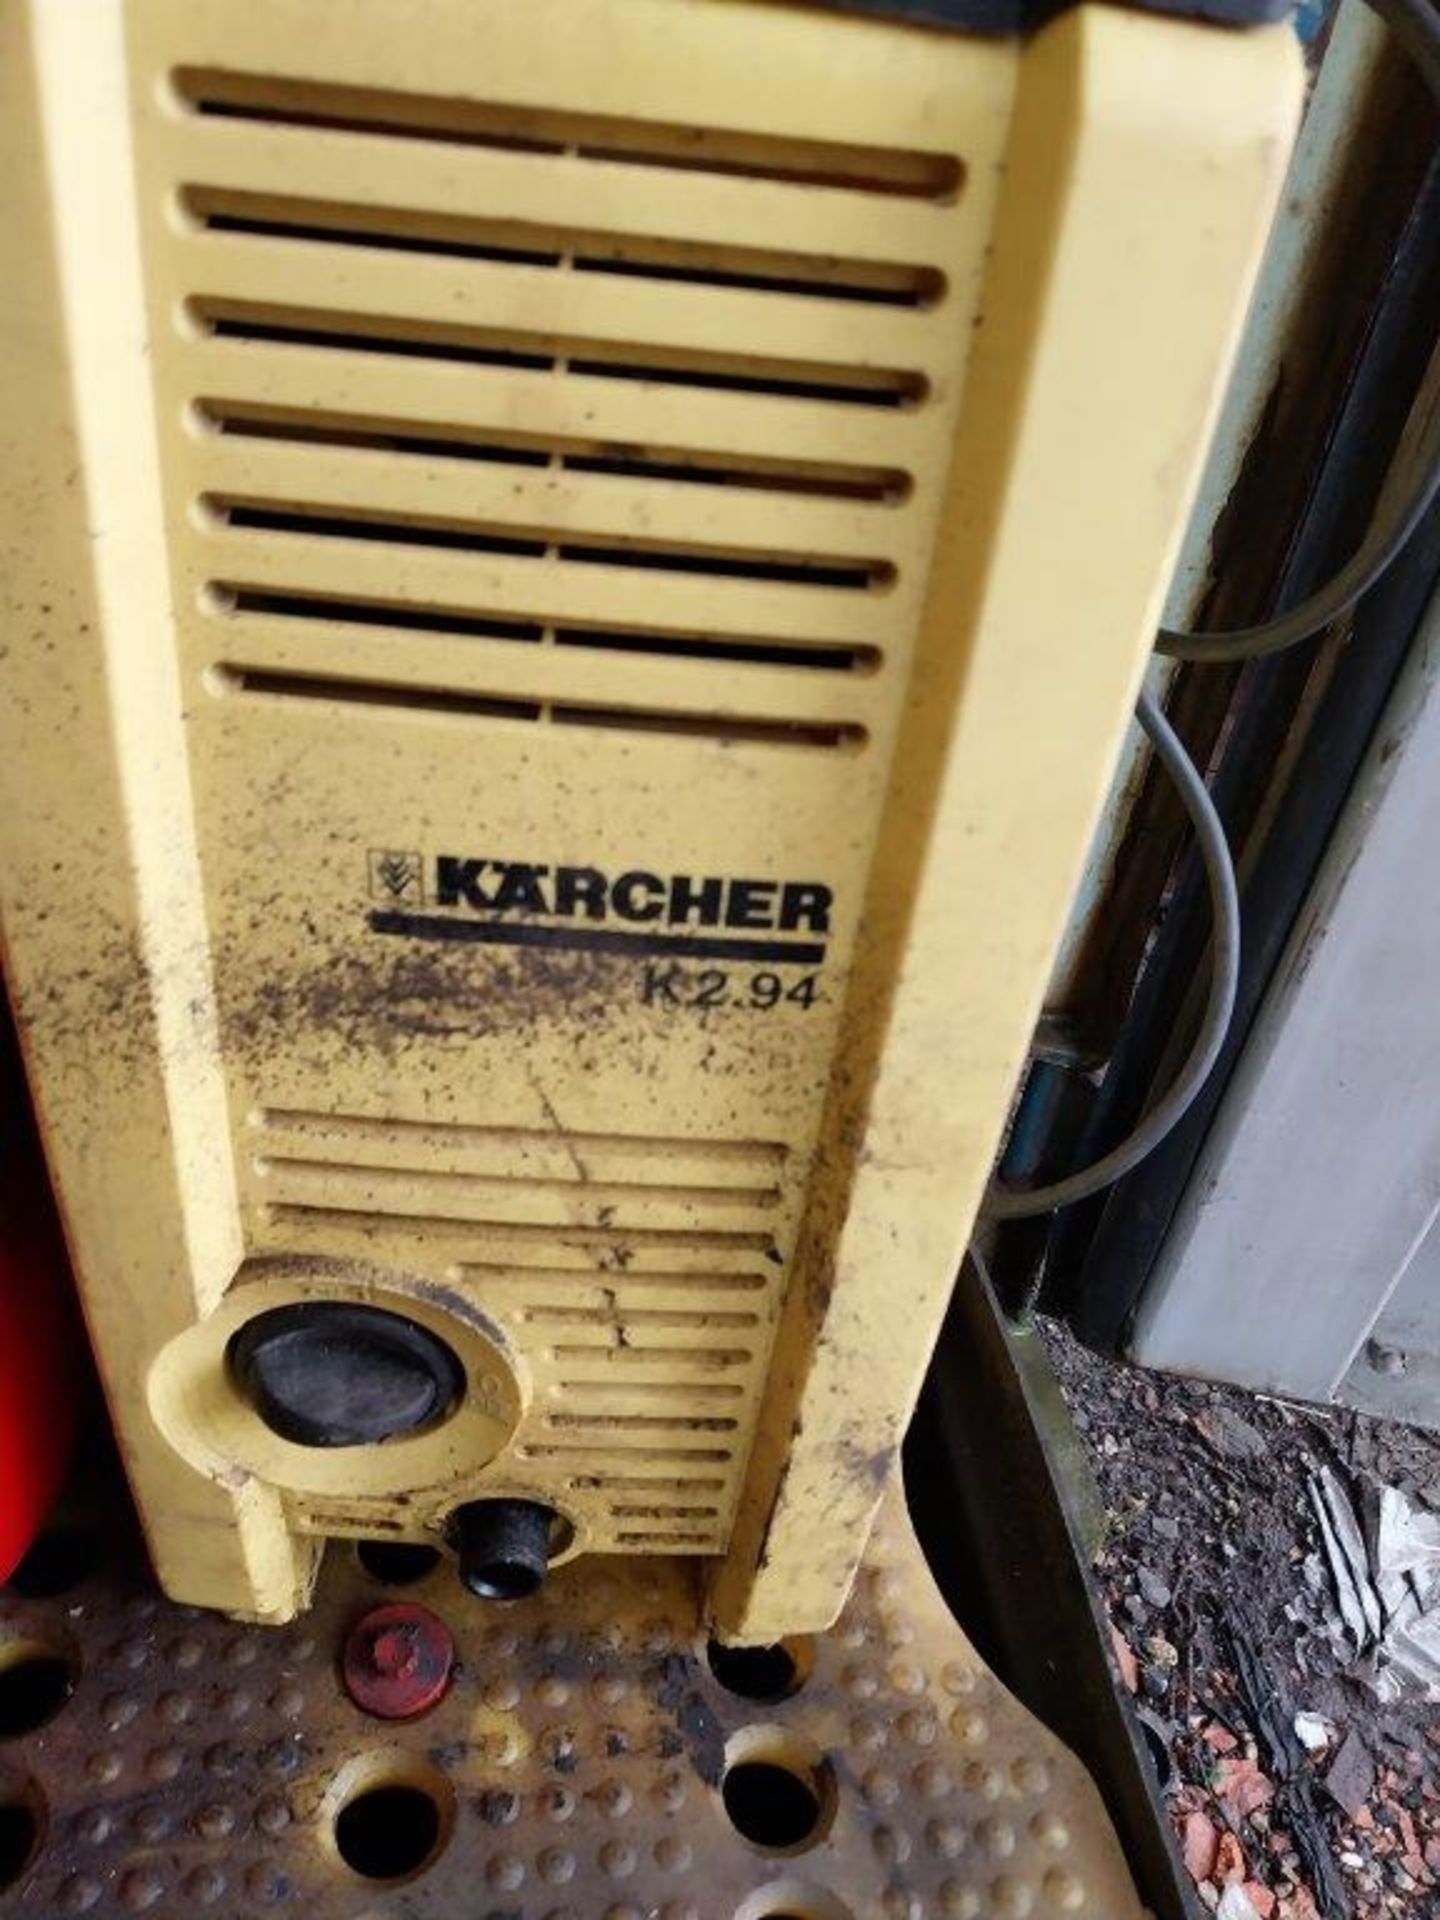 Karcher K2.94 pressure washer 240v - Image 2 of 2